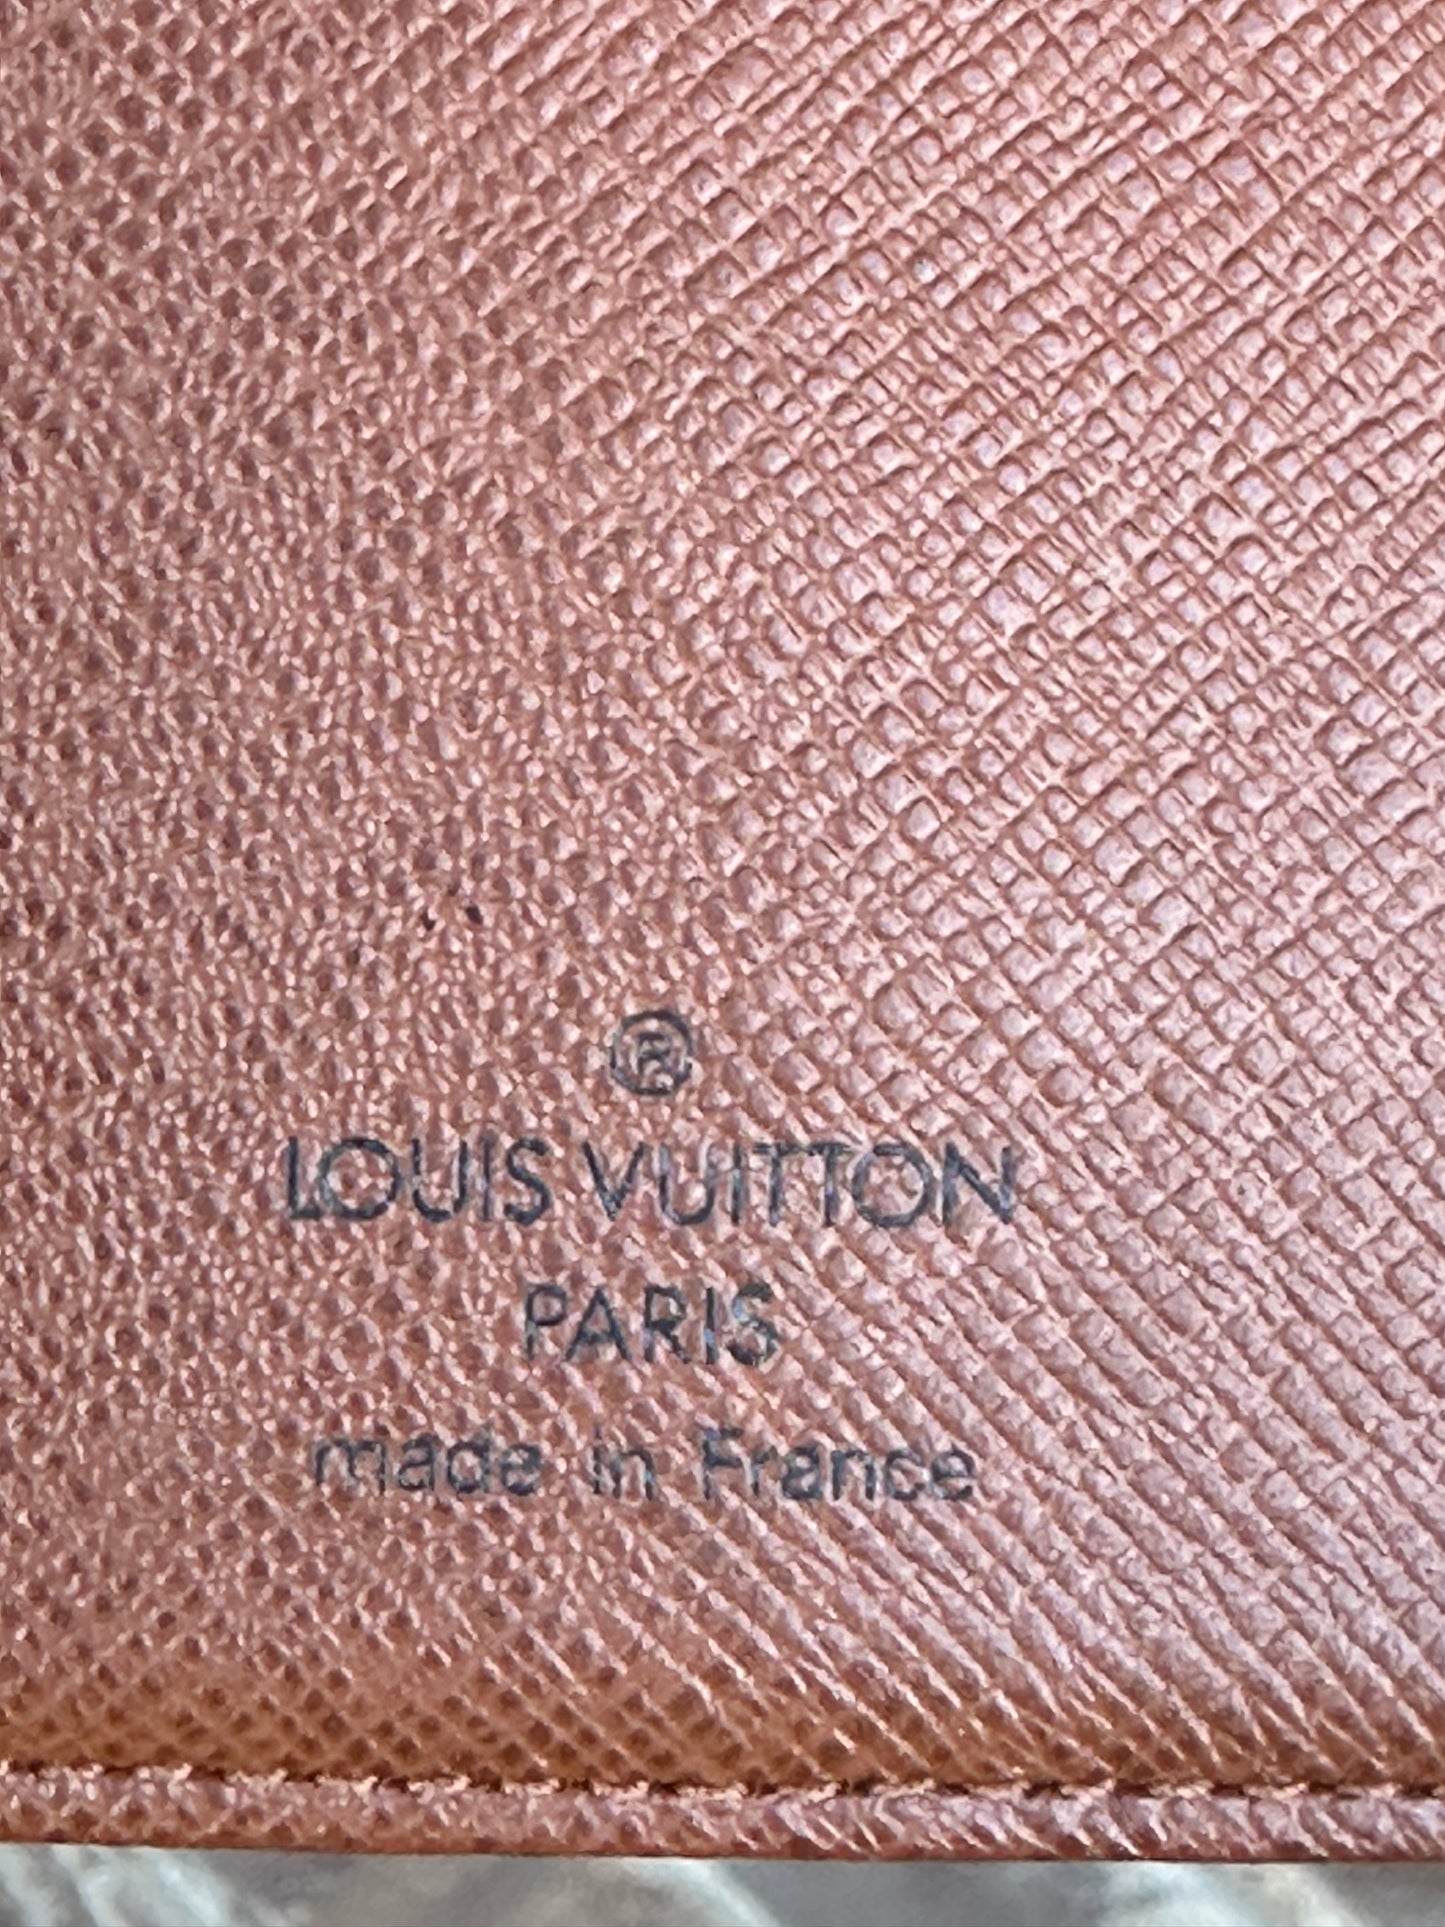 Louis Vuitton Monogram Agenda PM